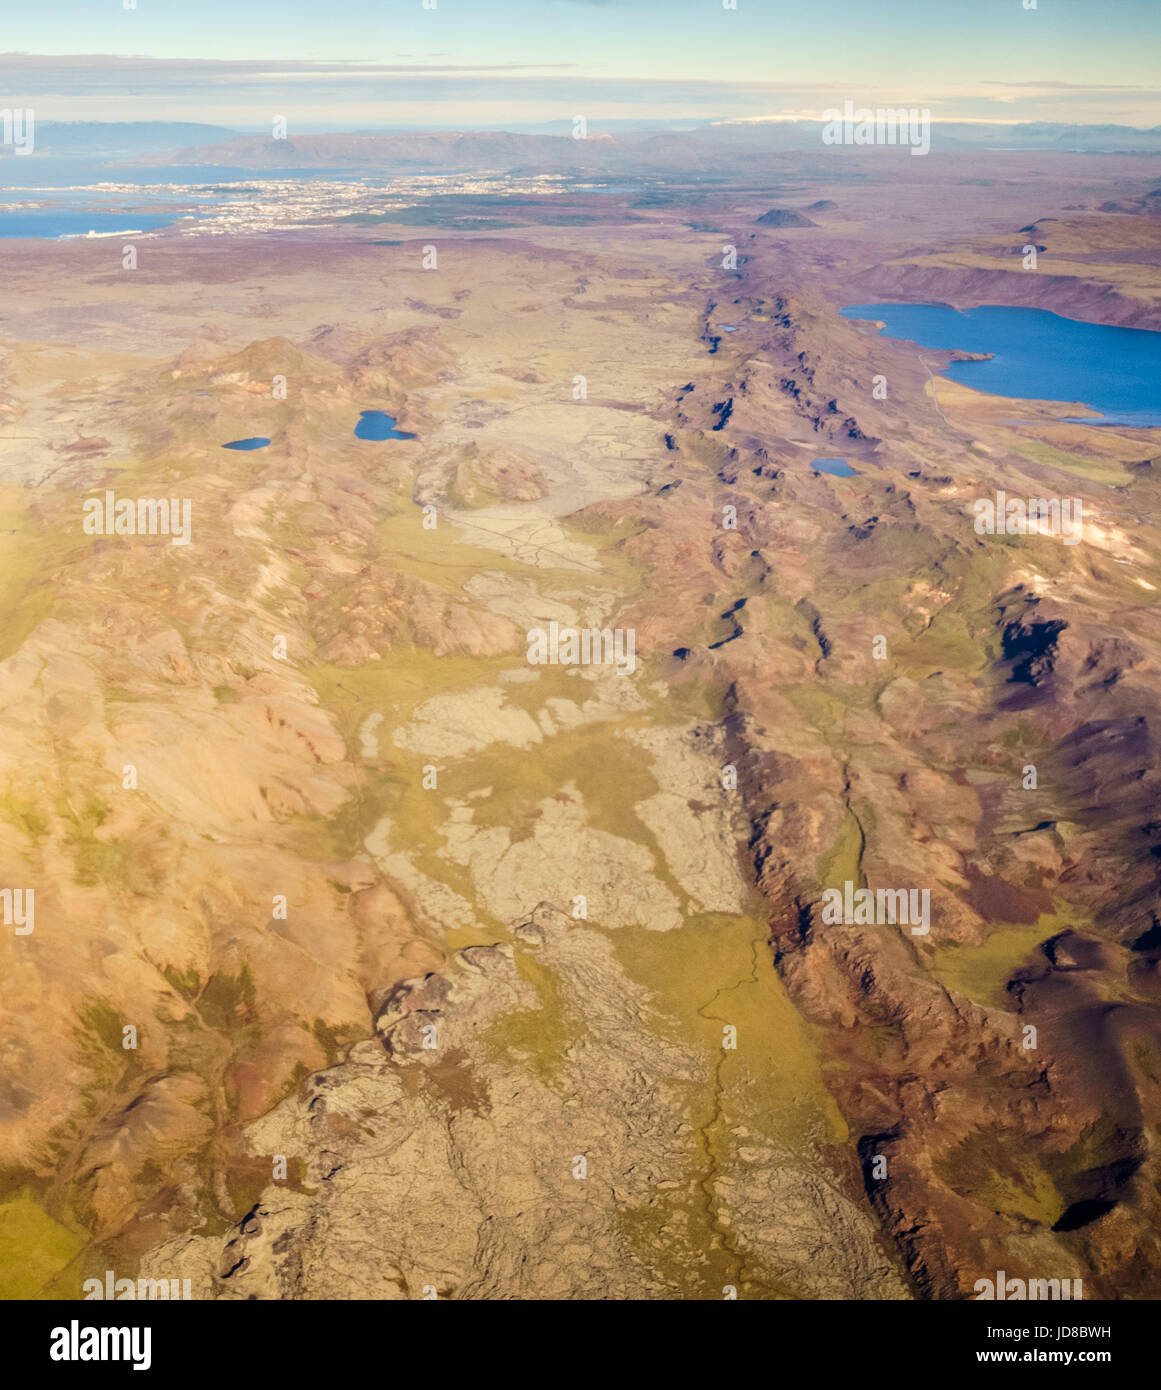 Vue aérienne de l'Islande, l'Europe, montrant l'infrastructure routière, abstract, high angle view. Nature de l'Islande 2017 hiver froid Banque D'Images